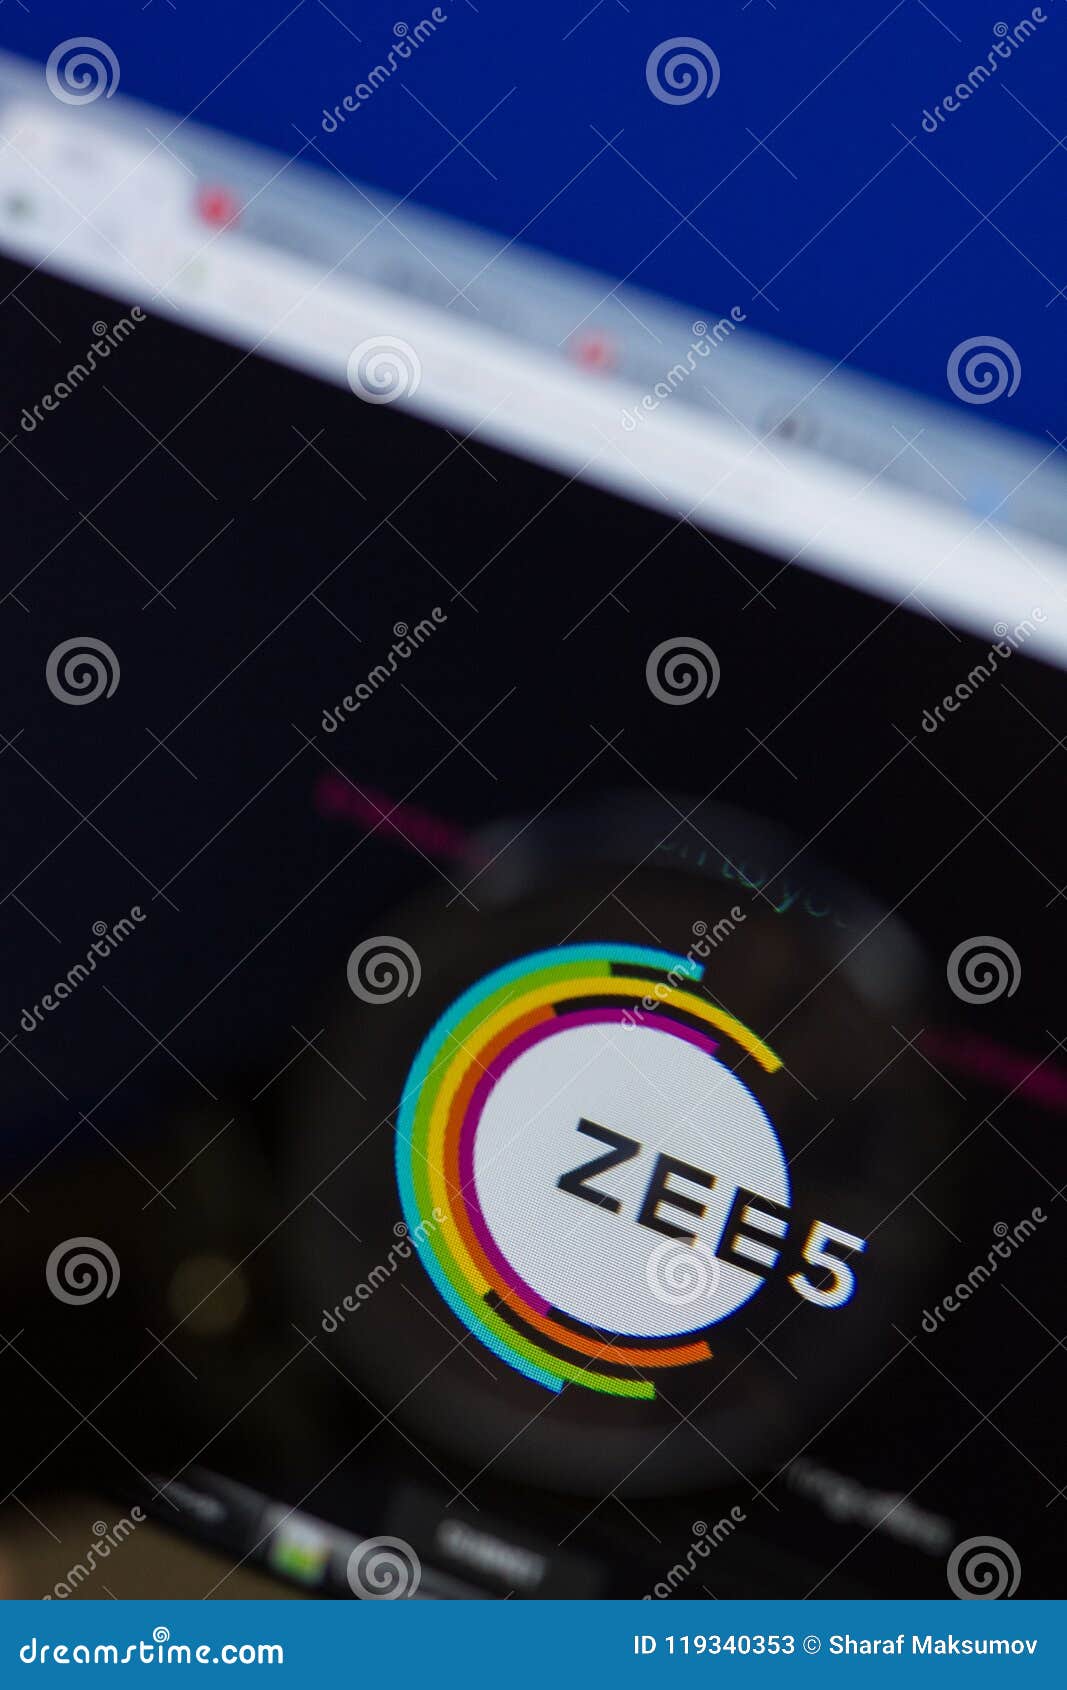 Details more than 75 zee5 logo best - ceg.edu.vn